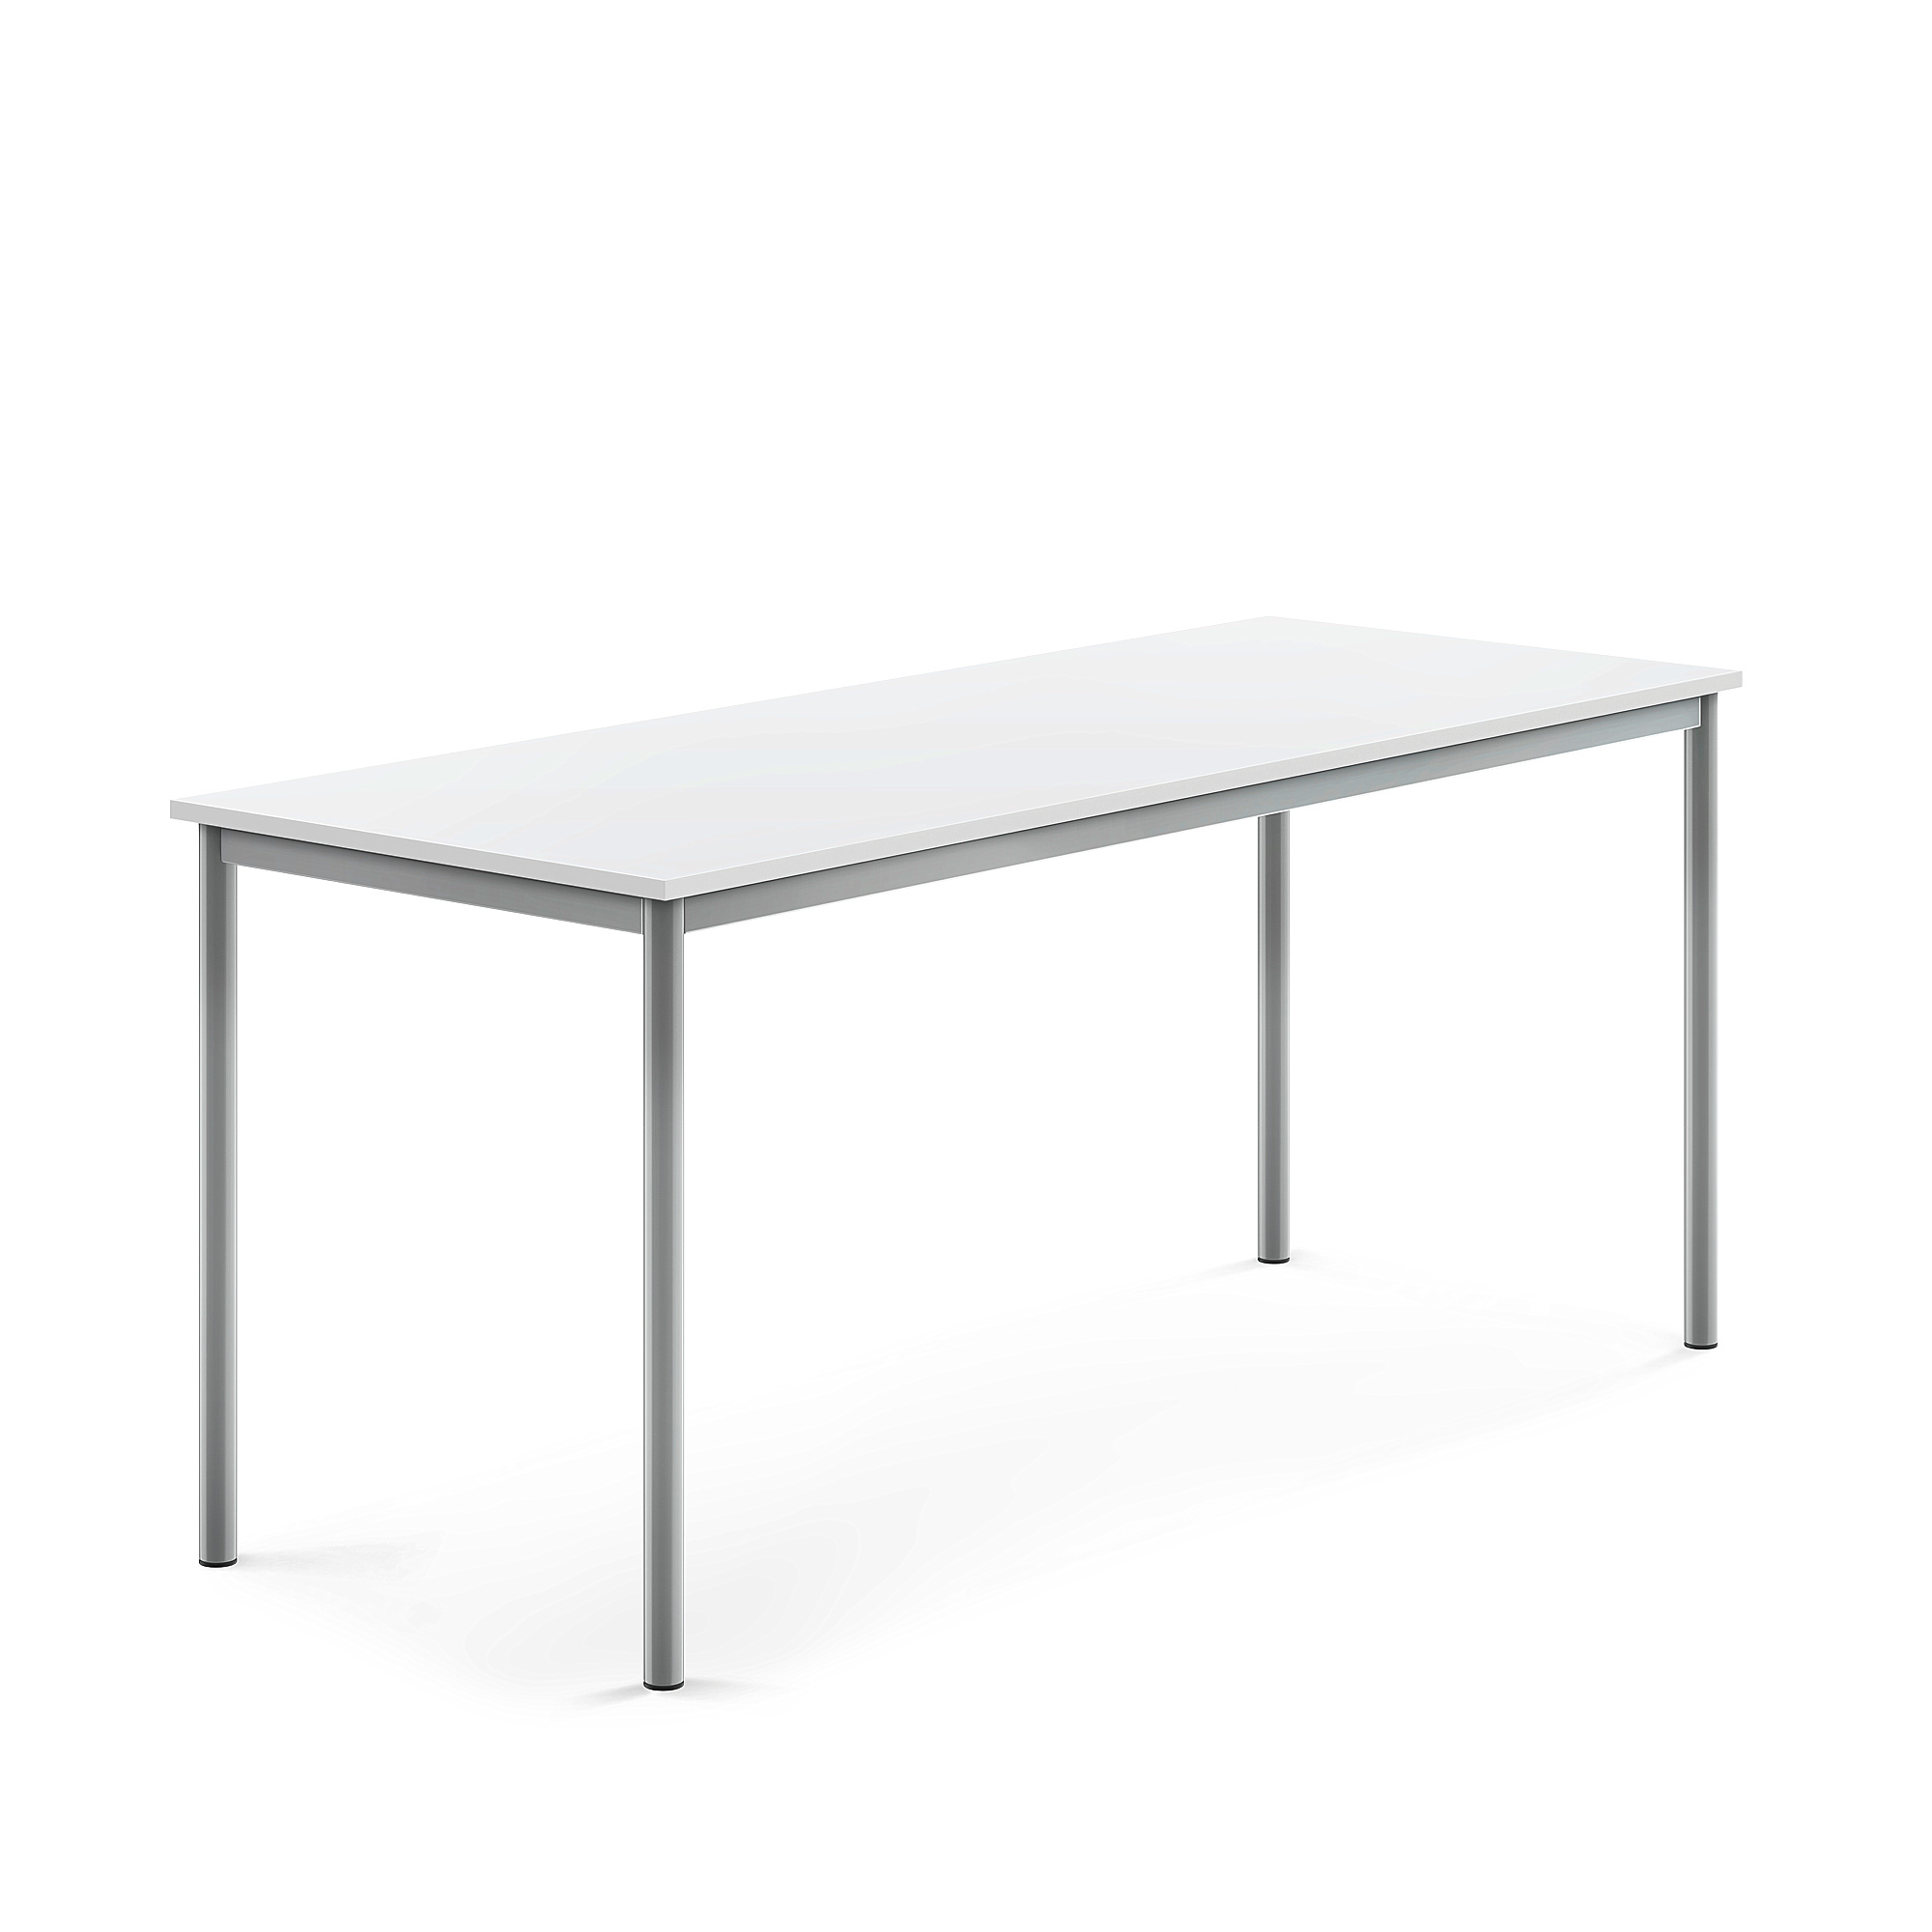 Stůl BORÅS, 1800x700x760 mm, stříbrné nohy, HPL deska, bílá